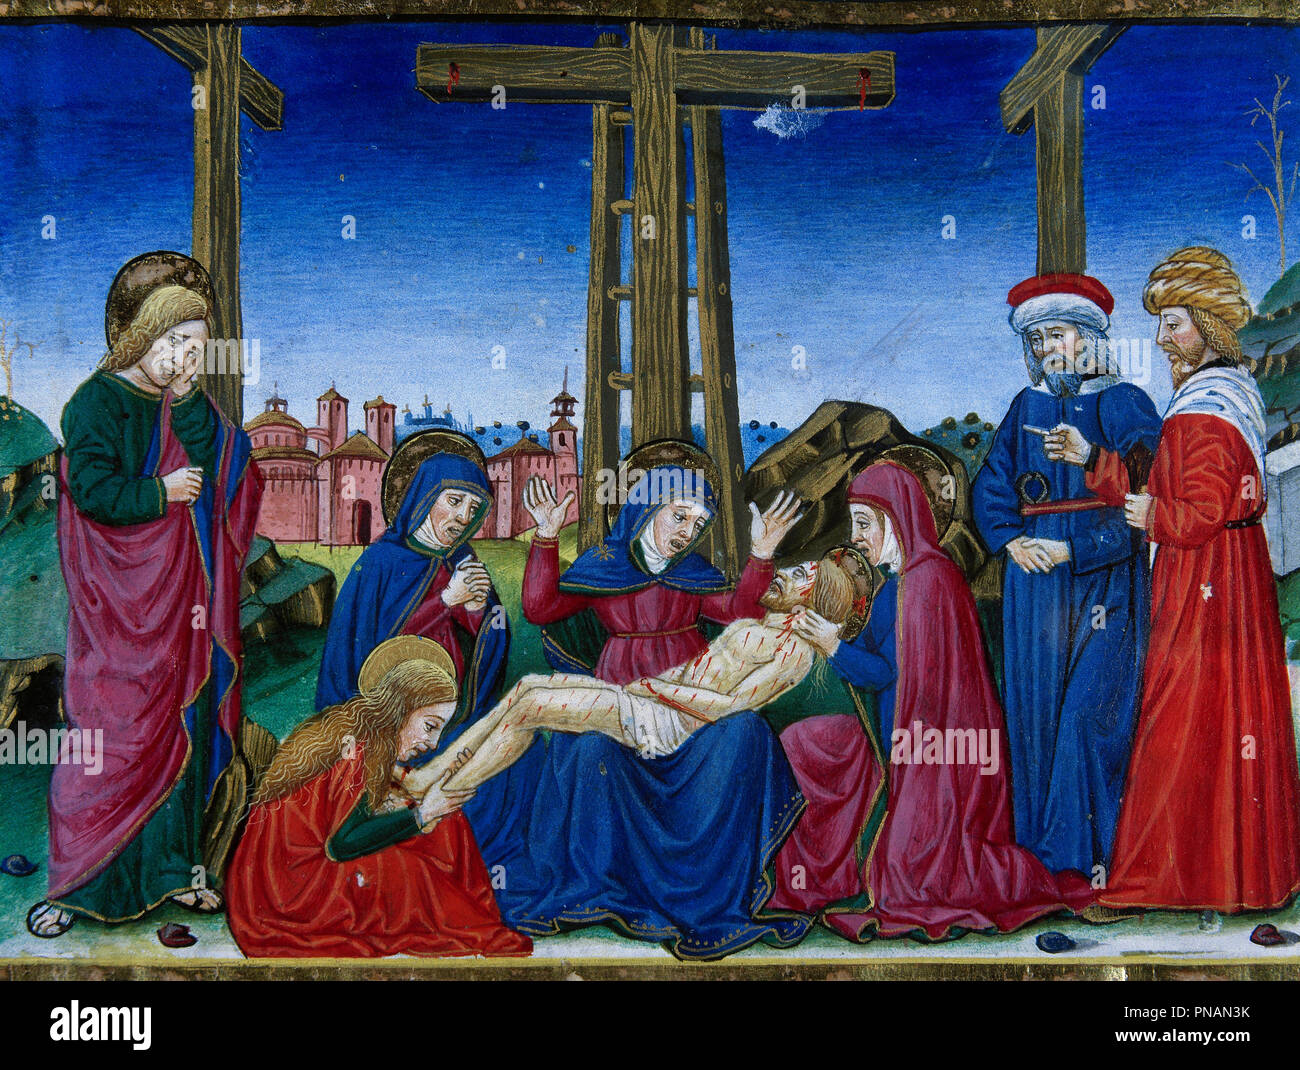 Cristoforo de Predis (1440-1486). Miniatore italiano. Discesa dalla Croce. Miniatura. Codex di Predis, 1476. Biblioteca Reale. Torino, Italia. Foto Stock